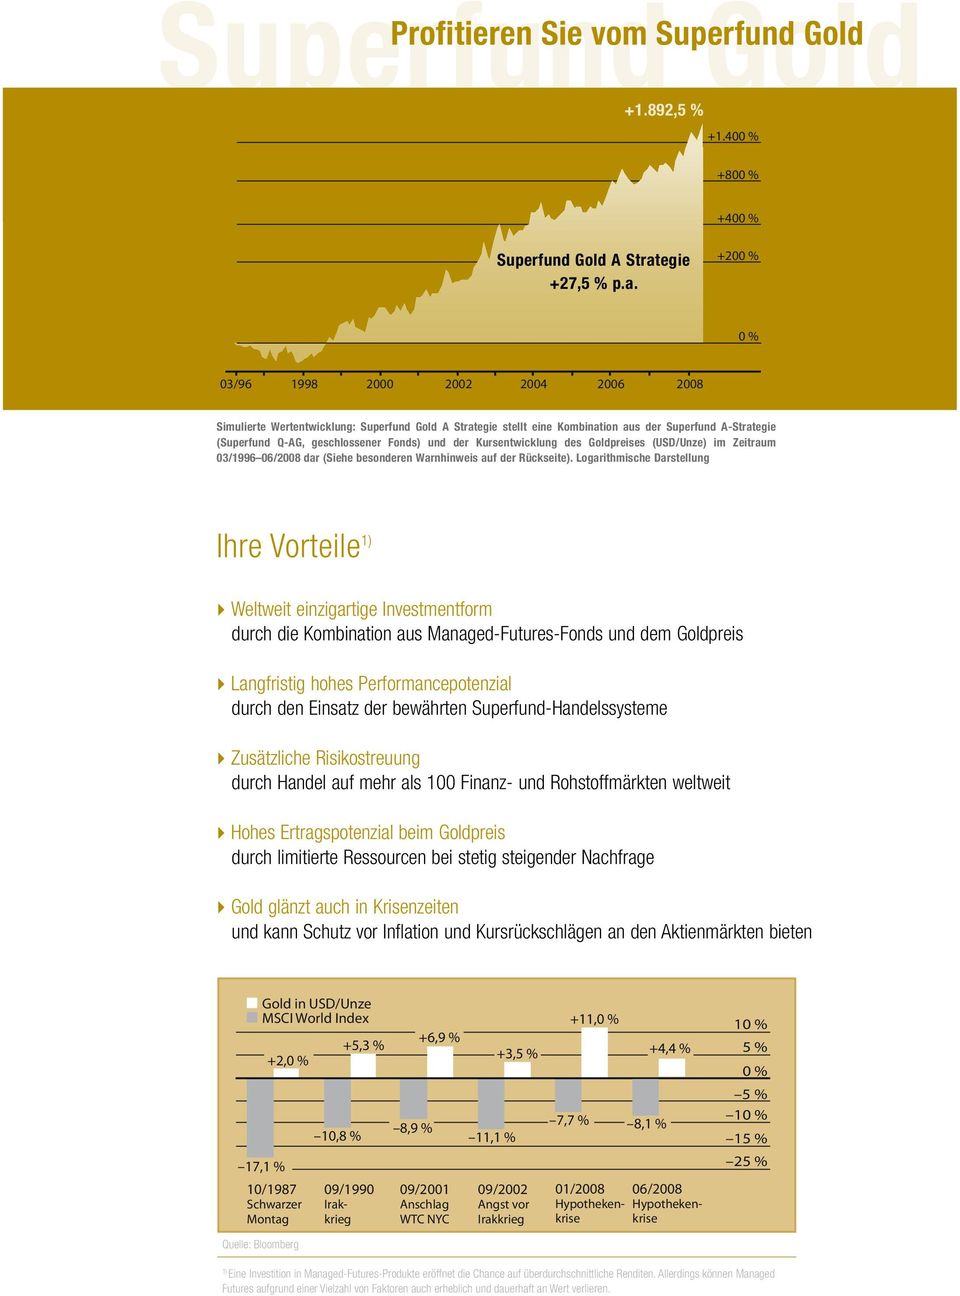 +200 % 0 % Simulierte Wertentwicklung: Gold A Strategie stellt eine Kombination aus der A-Strategie ( Q-AG, geschlossener Fonds) und der Kursentwicklung des Goldpreises (USD/Unze) im Zeitraum 03/1996